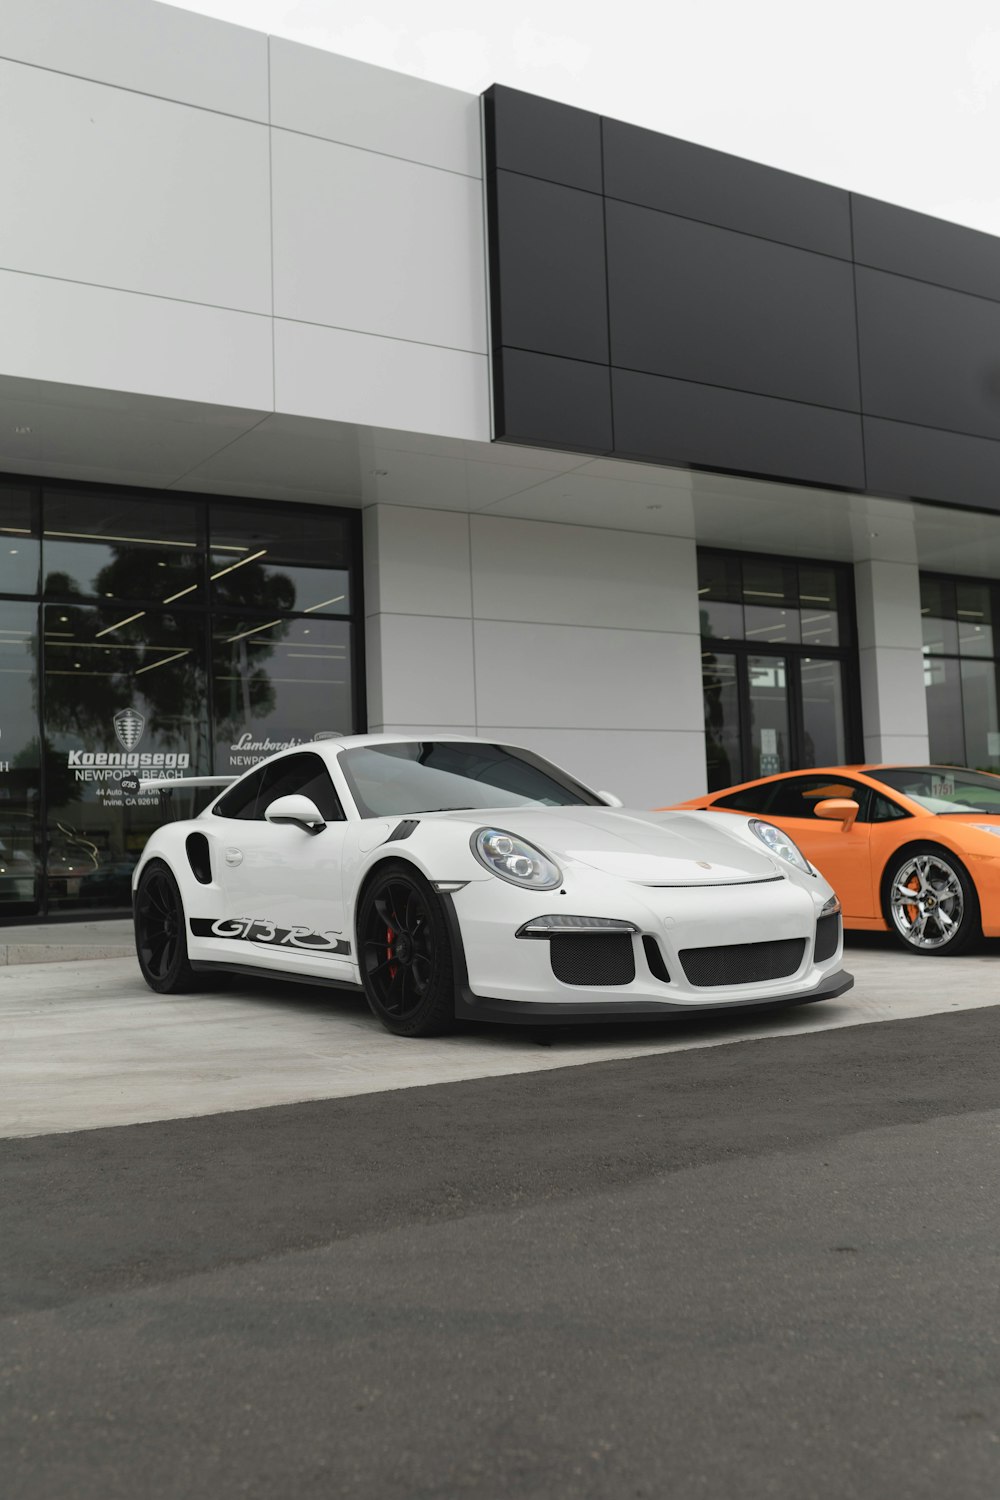 Porsche 911 blanco y naranja aparcado frente a un edificio blanco